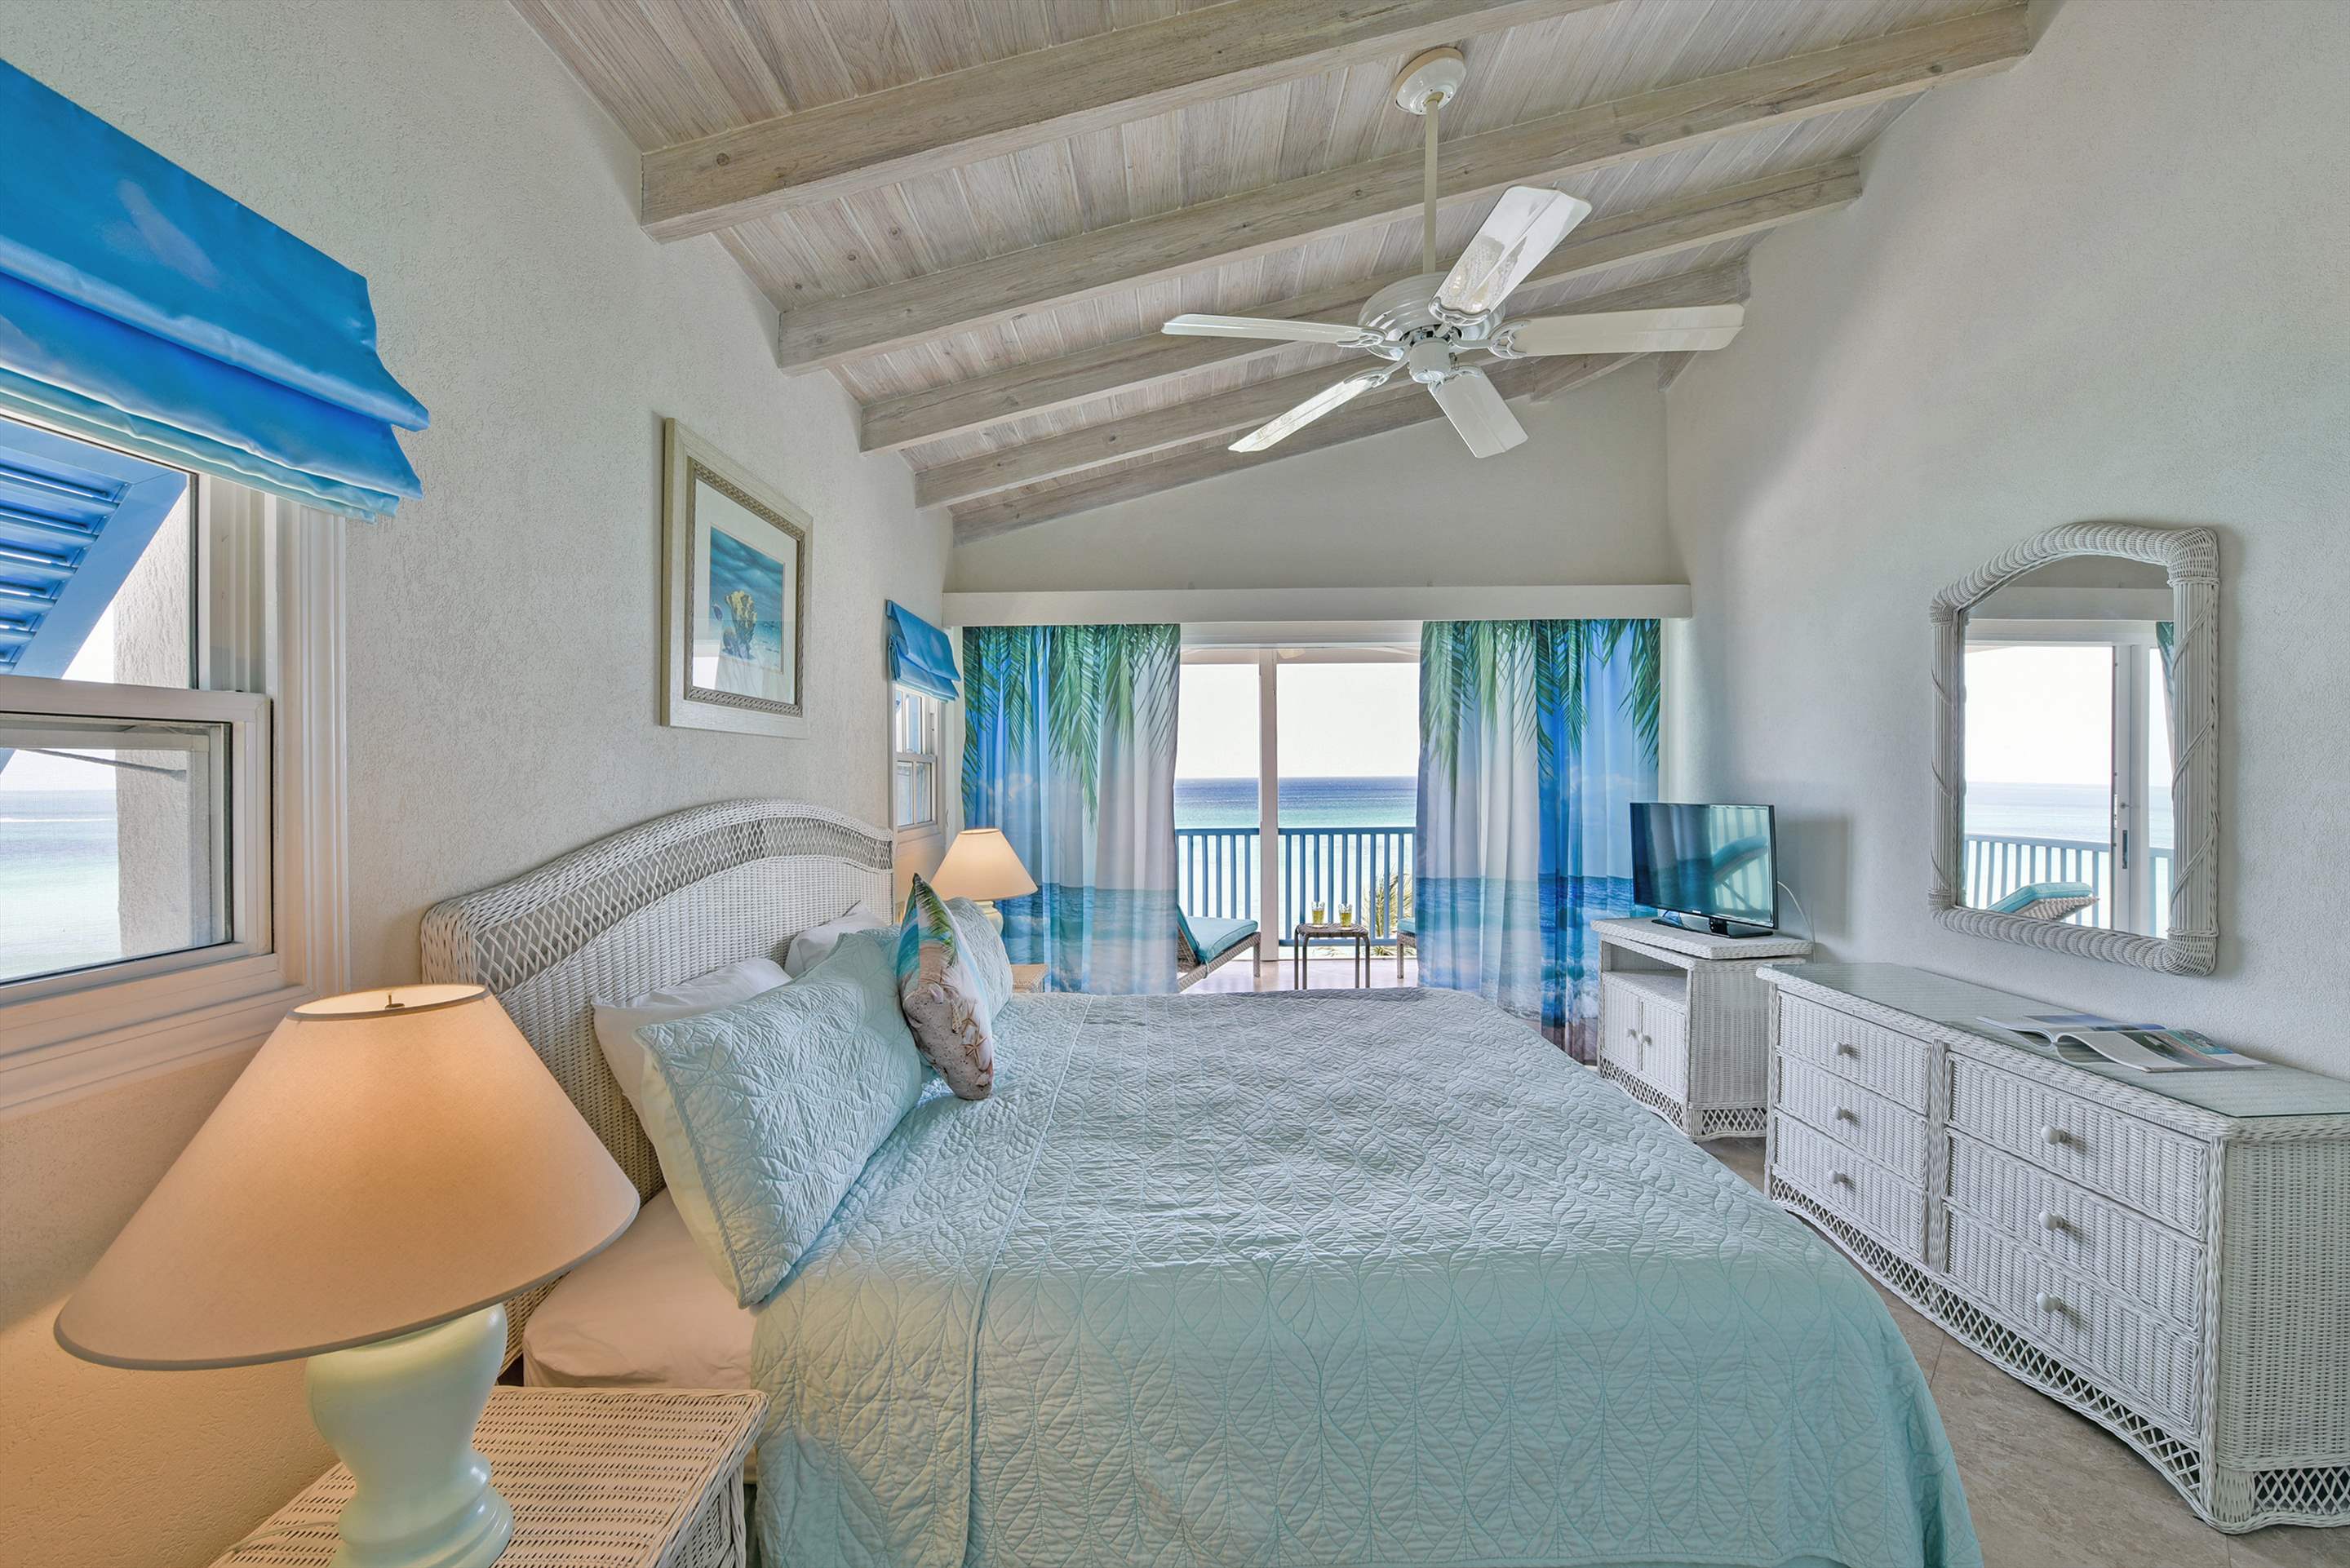 Maxwell Beach Villas 503, 2 bedroom, 2 bedroom villa in St. Lawrence Gap & South Coast, Barbados Photo #14